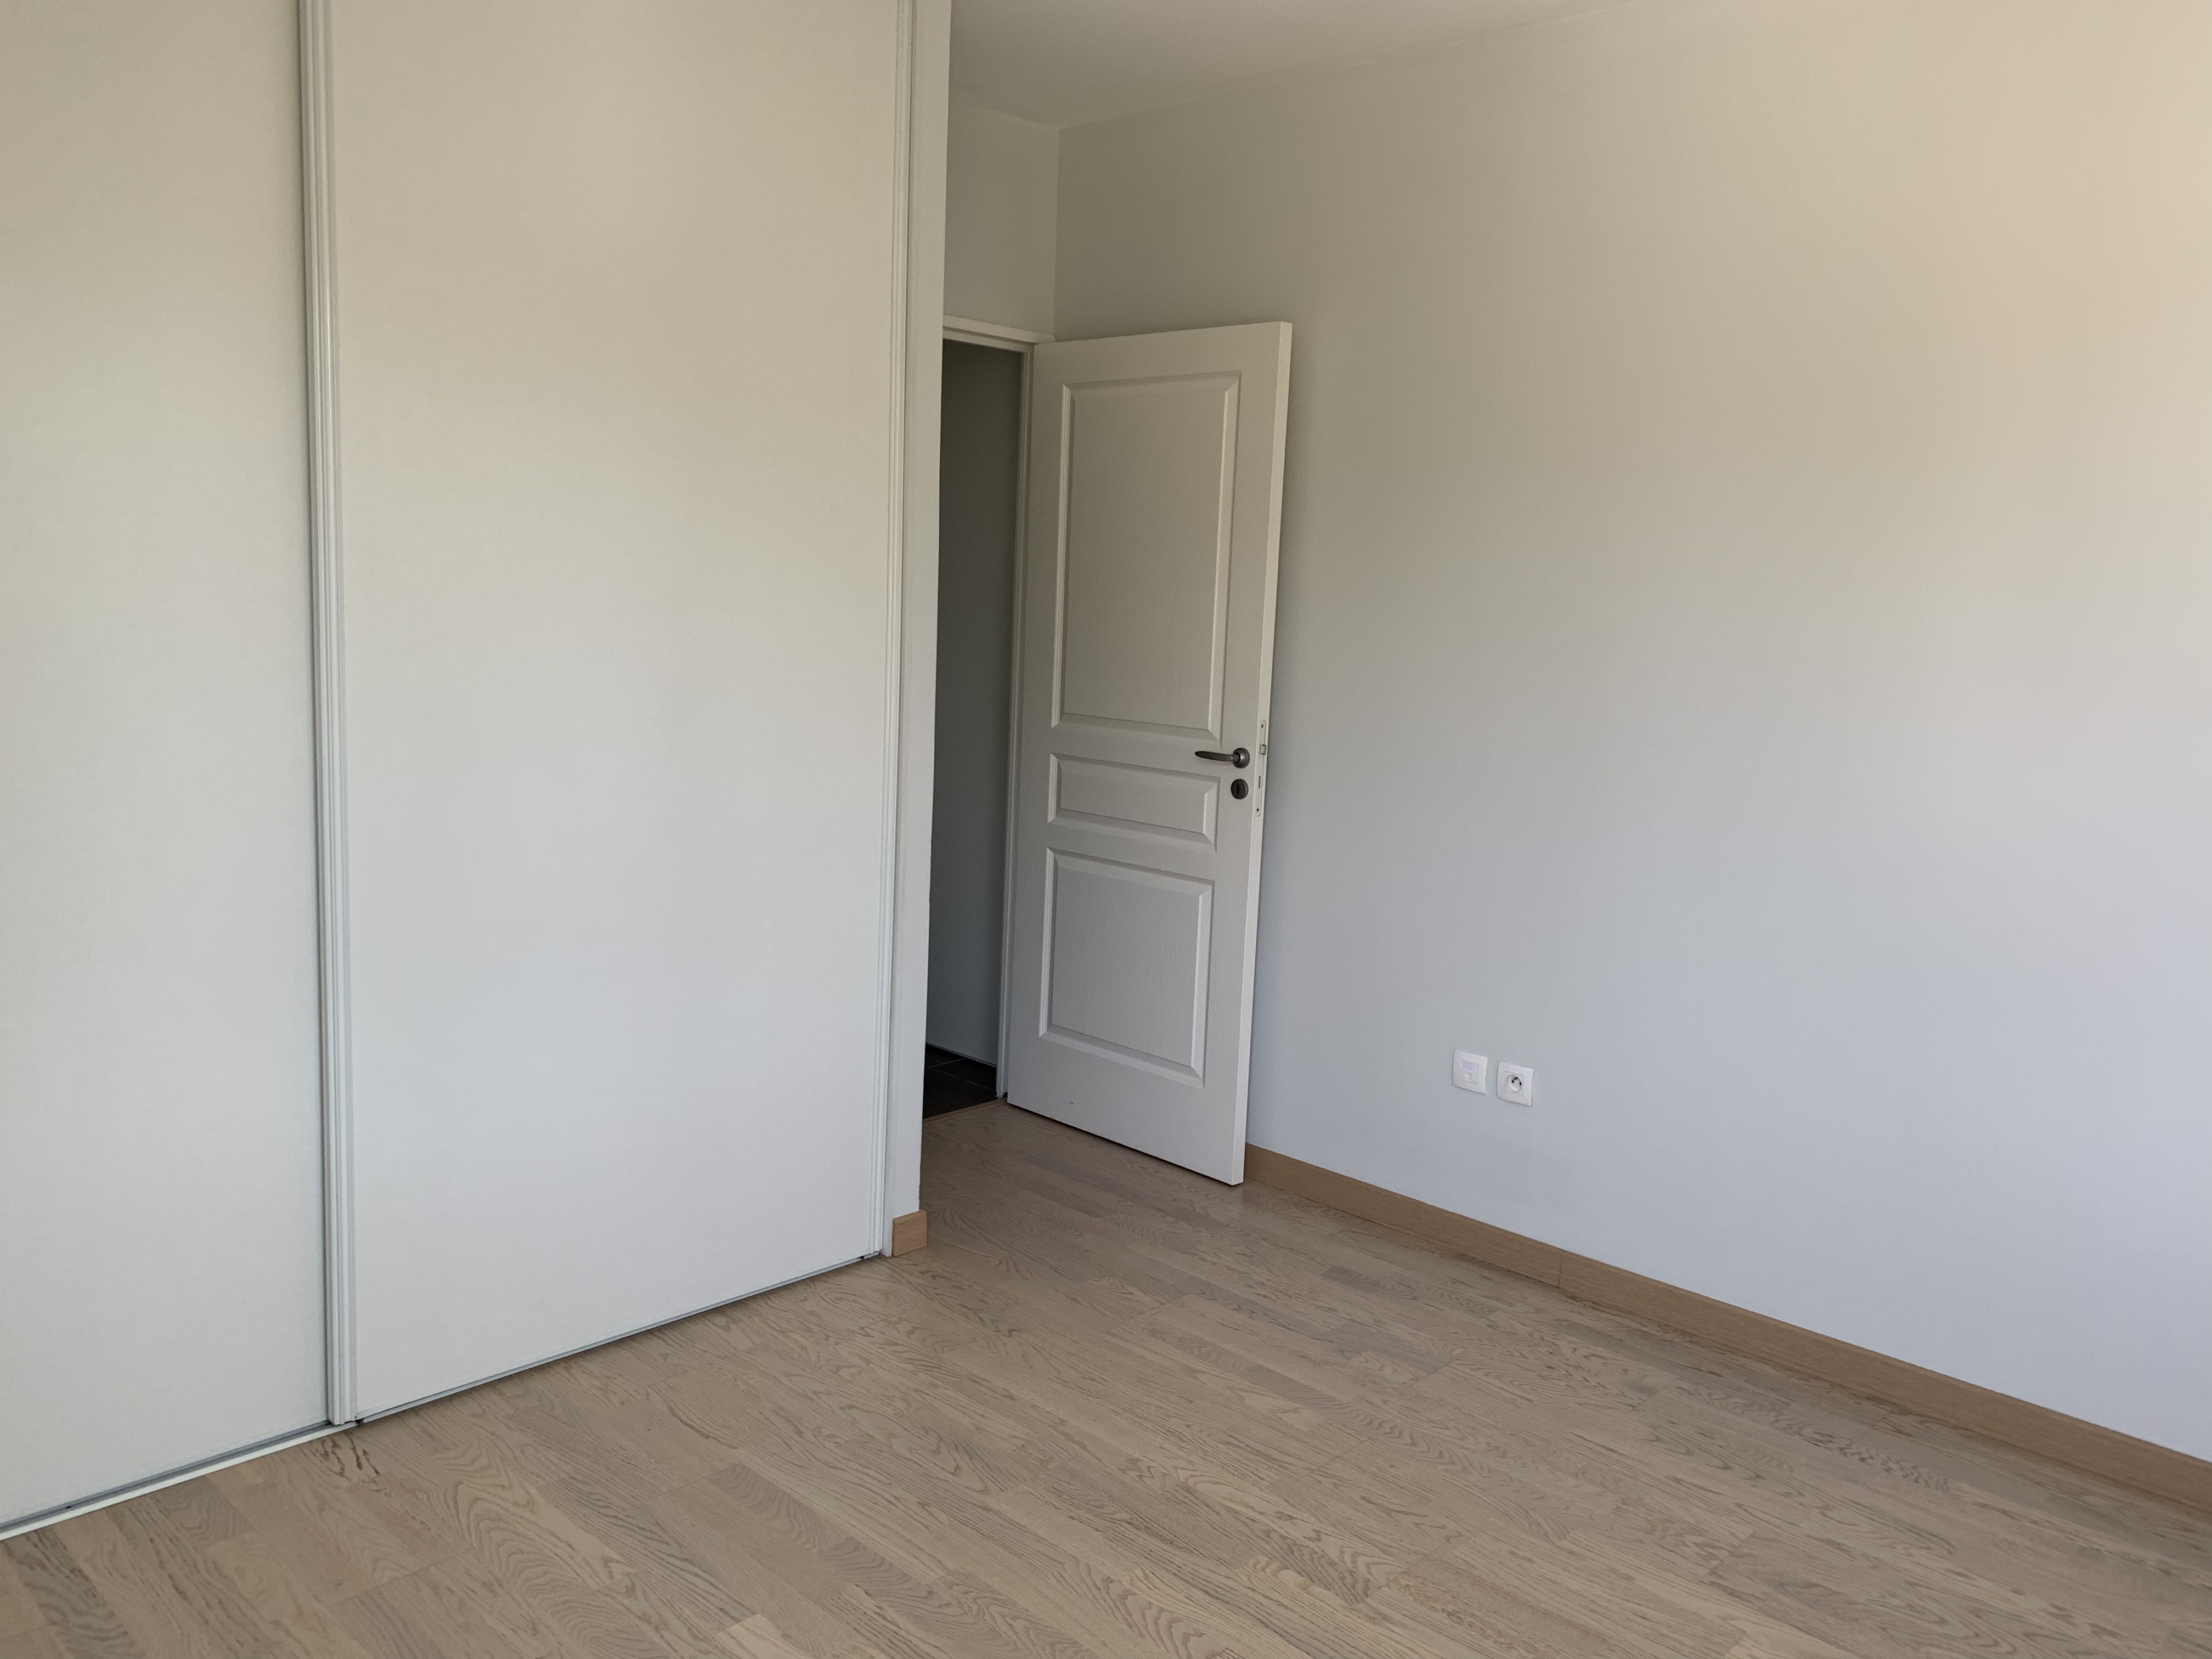 PropriLib l’agence immobilière en ligne à commission fixe vend cet appartement à Charbonnières-les-Bains